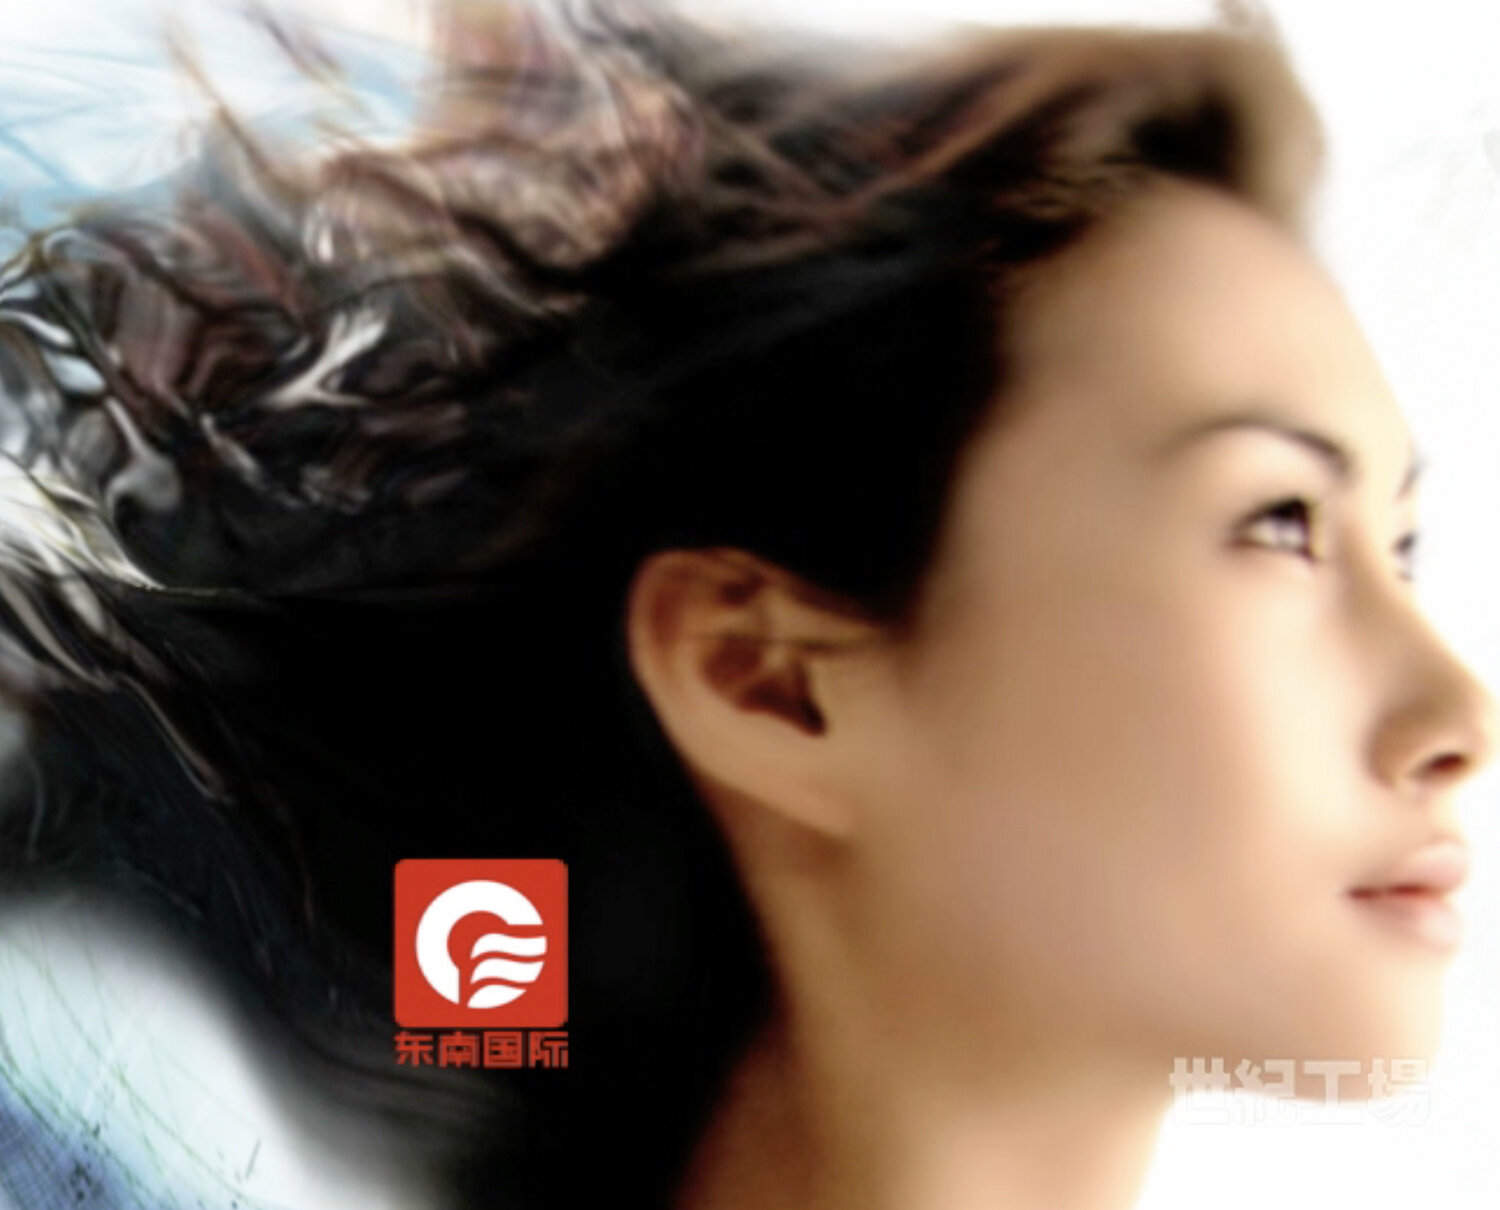 METERA Branding-Fujian Television-Screen Grab.png